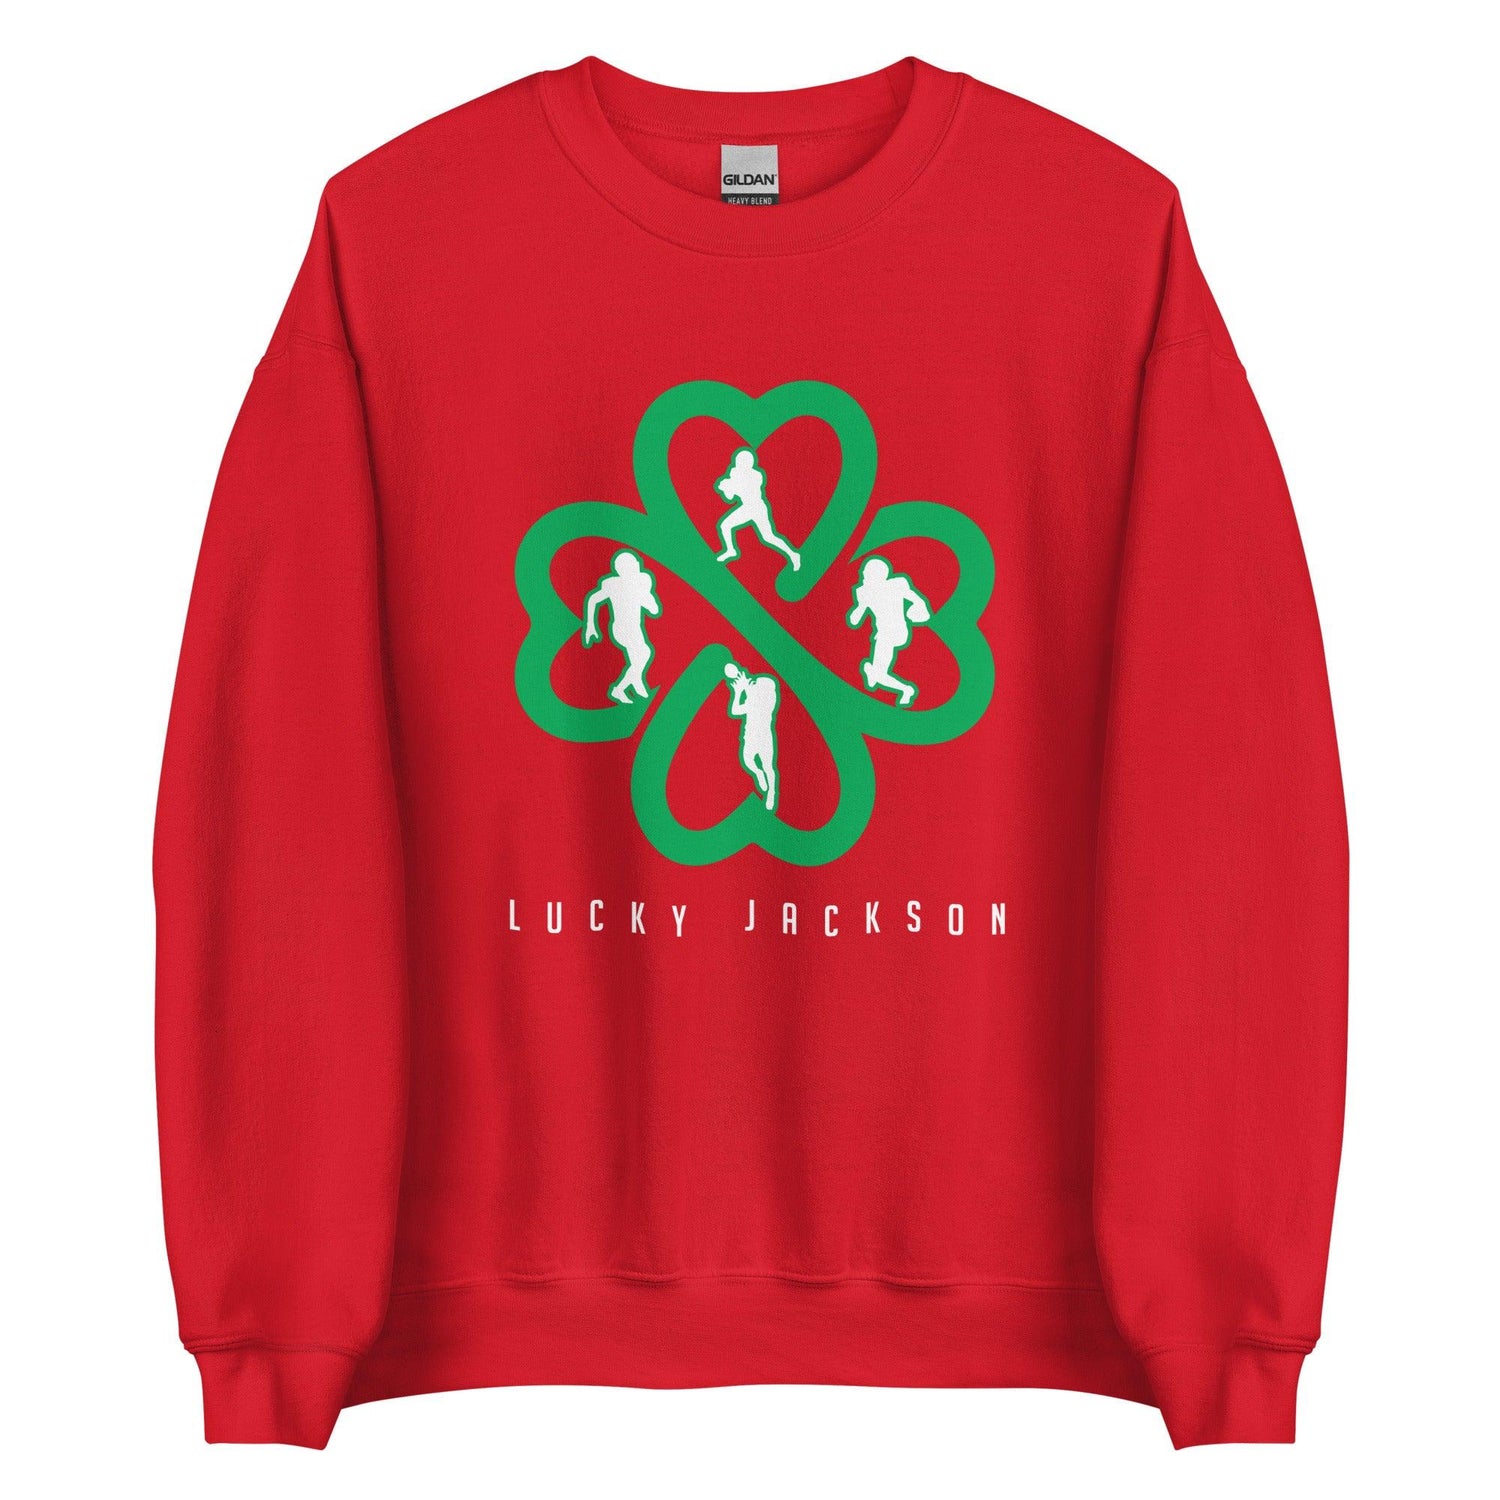 Lucky Jackson "Elite" Sweatshirt - Fan Arch